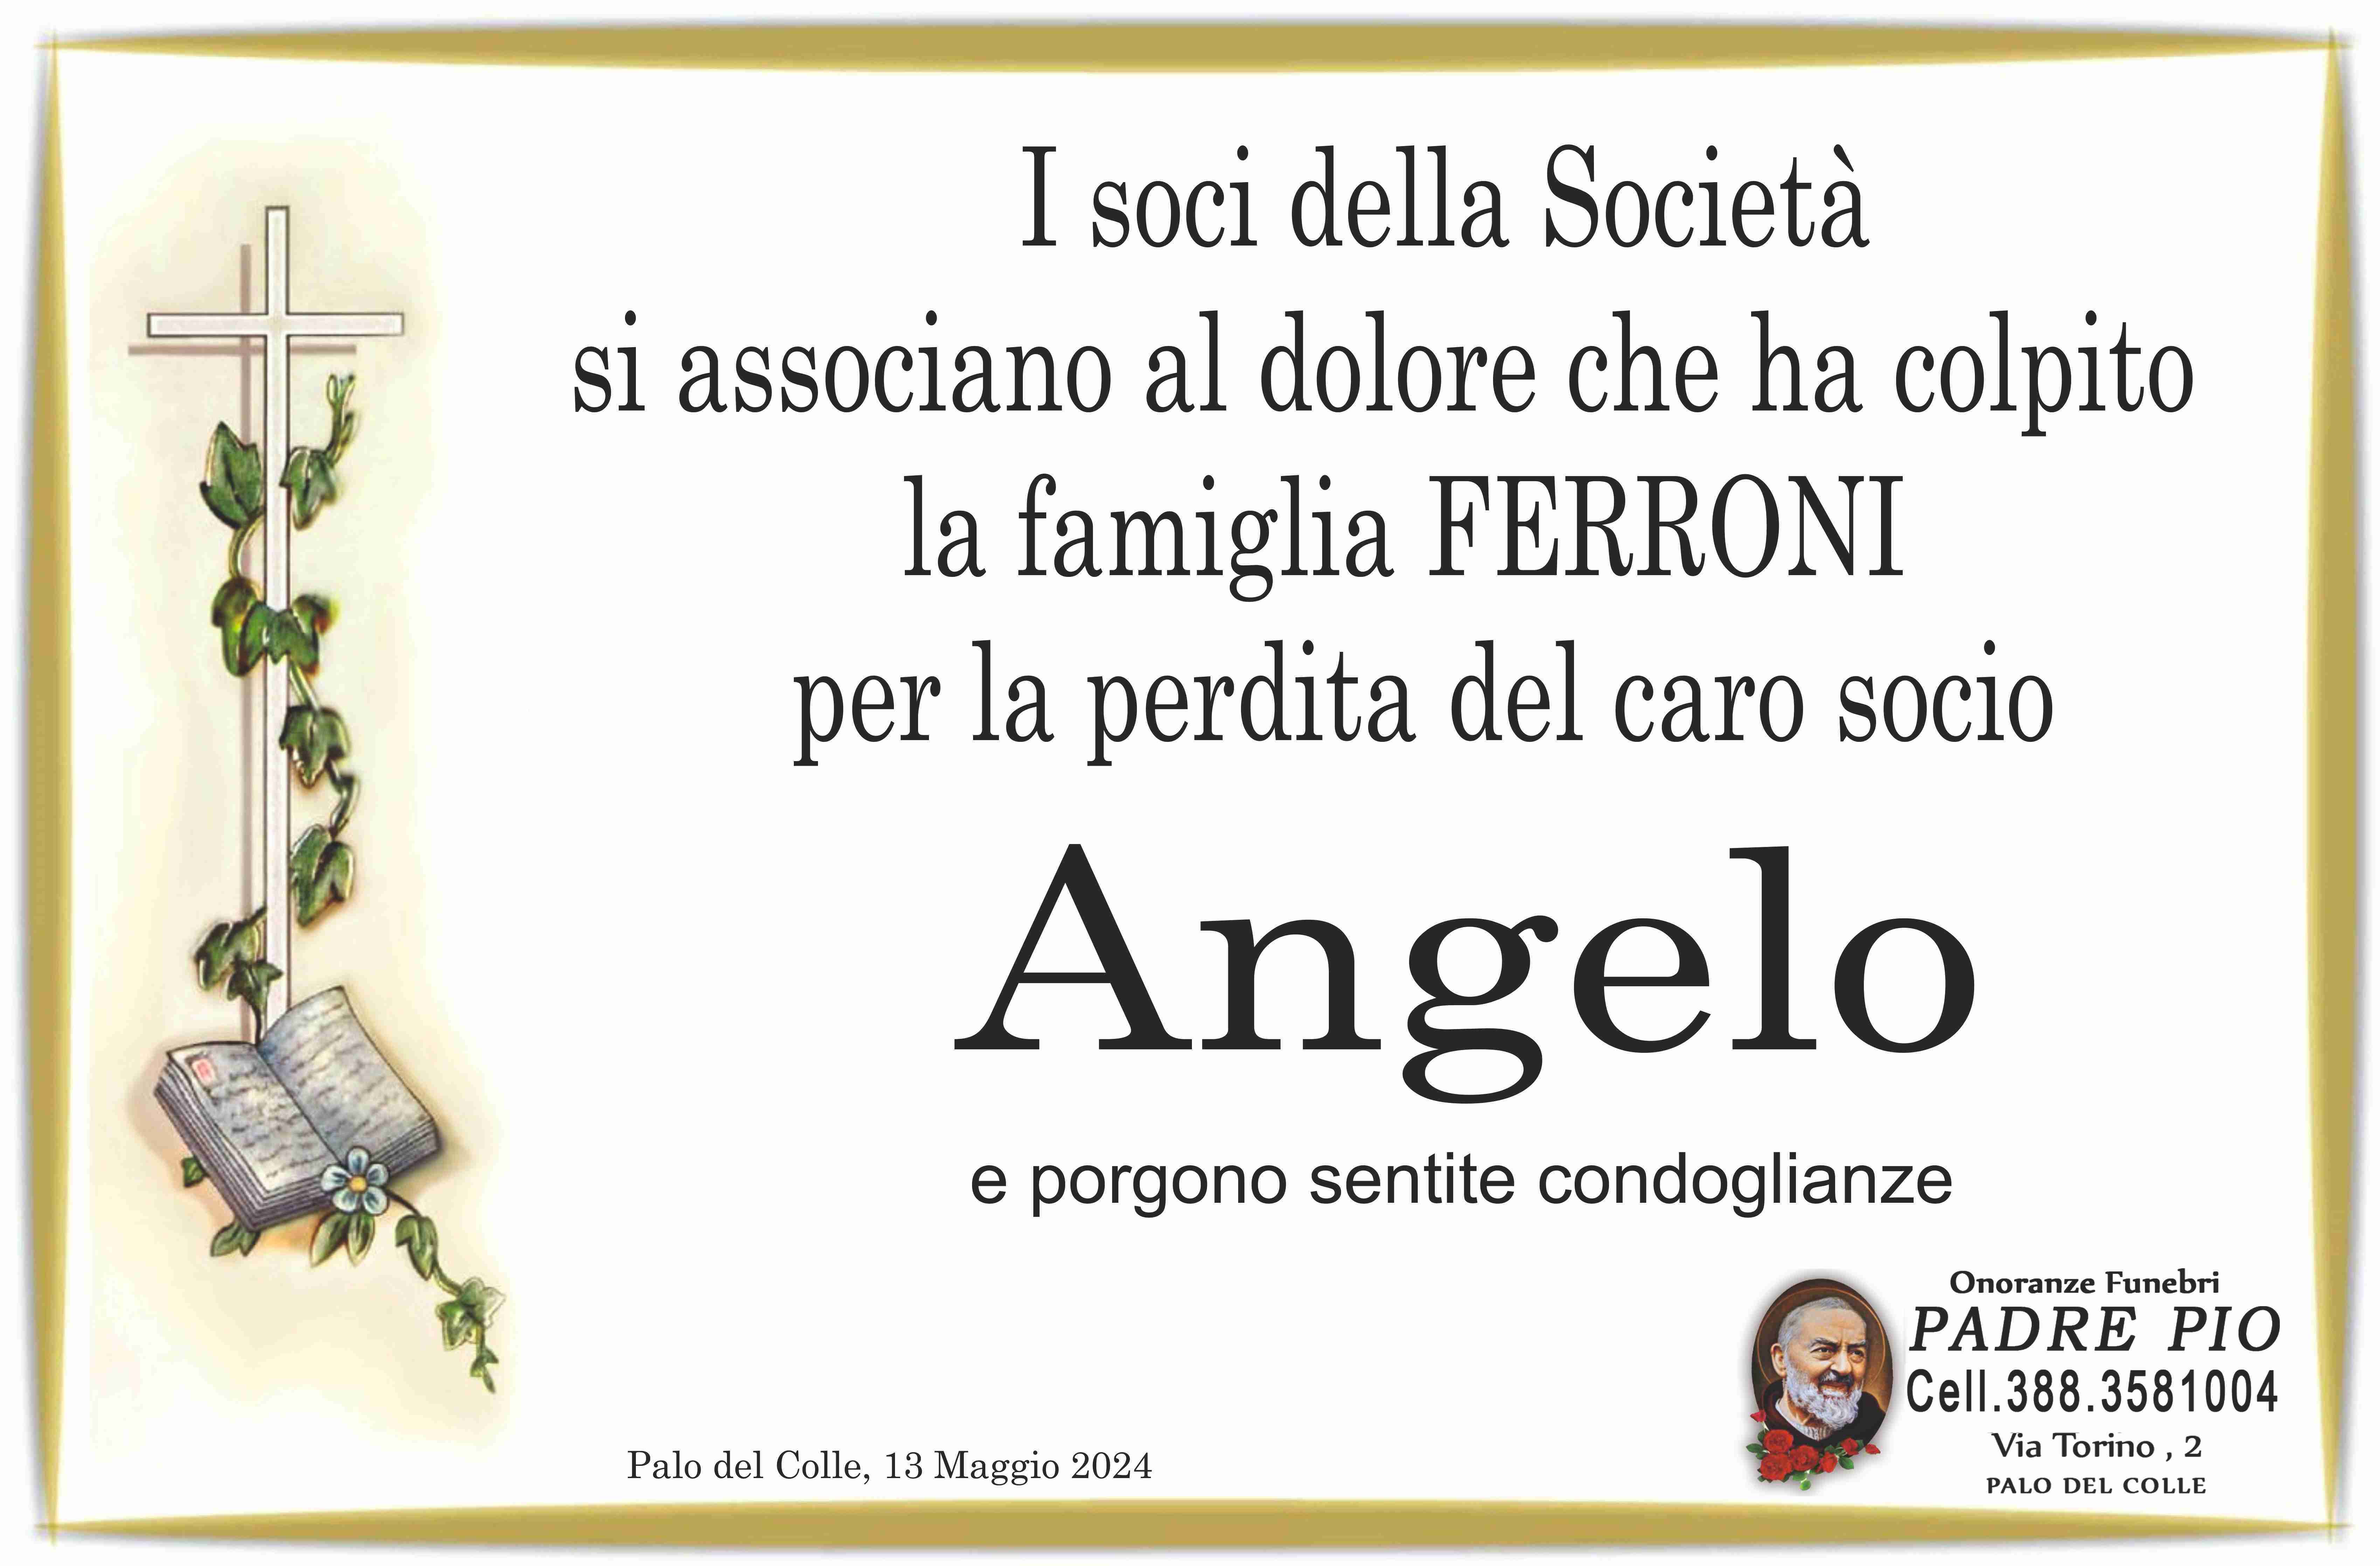 Angelo Ferroni